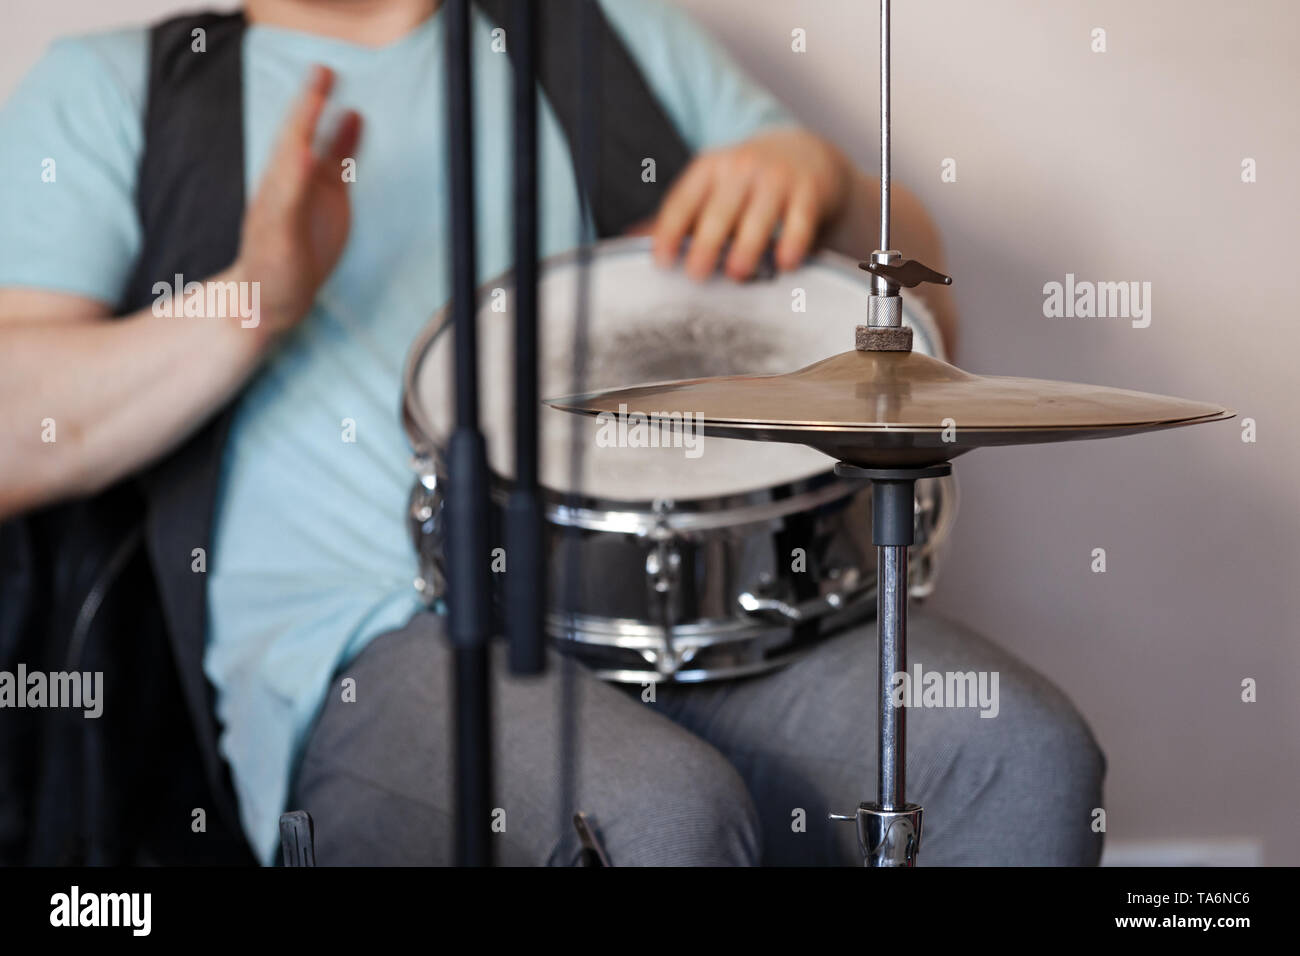 Arrière-plan de la musique live, le batteur joue avec les mains sur une caisse claire Banque D'Images